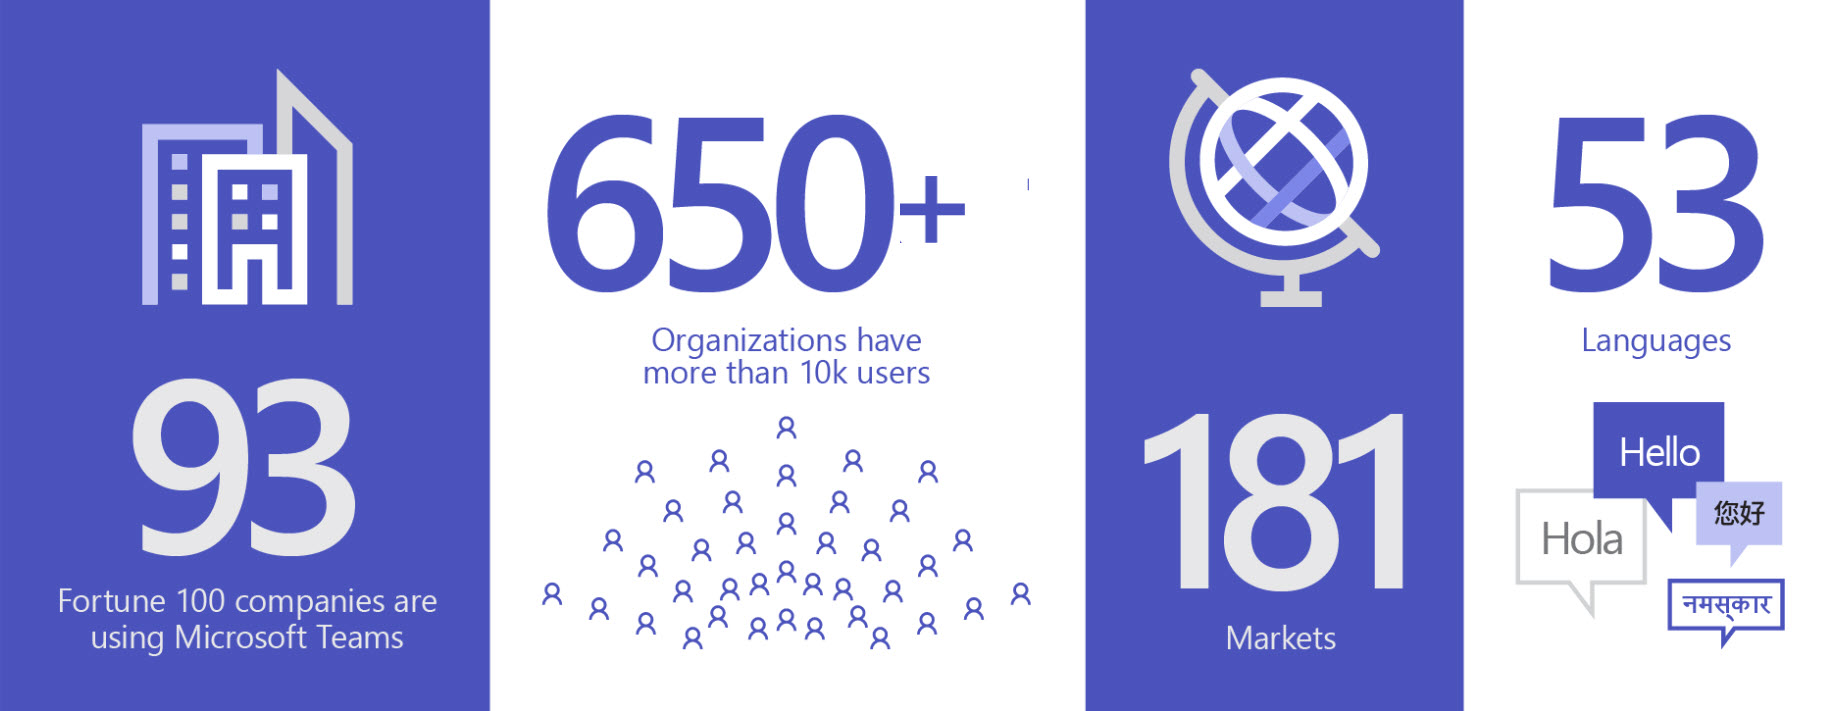 Obrázok znázorňujúci využívanie služby Teams 93 poprednými organizáciami, viac ako 650 organizáciami, ktoré majú nad 10 000 používateľov, využívanie na 181 svetových trhoch a v 53 jazykov.